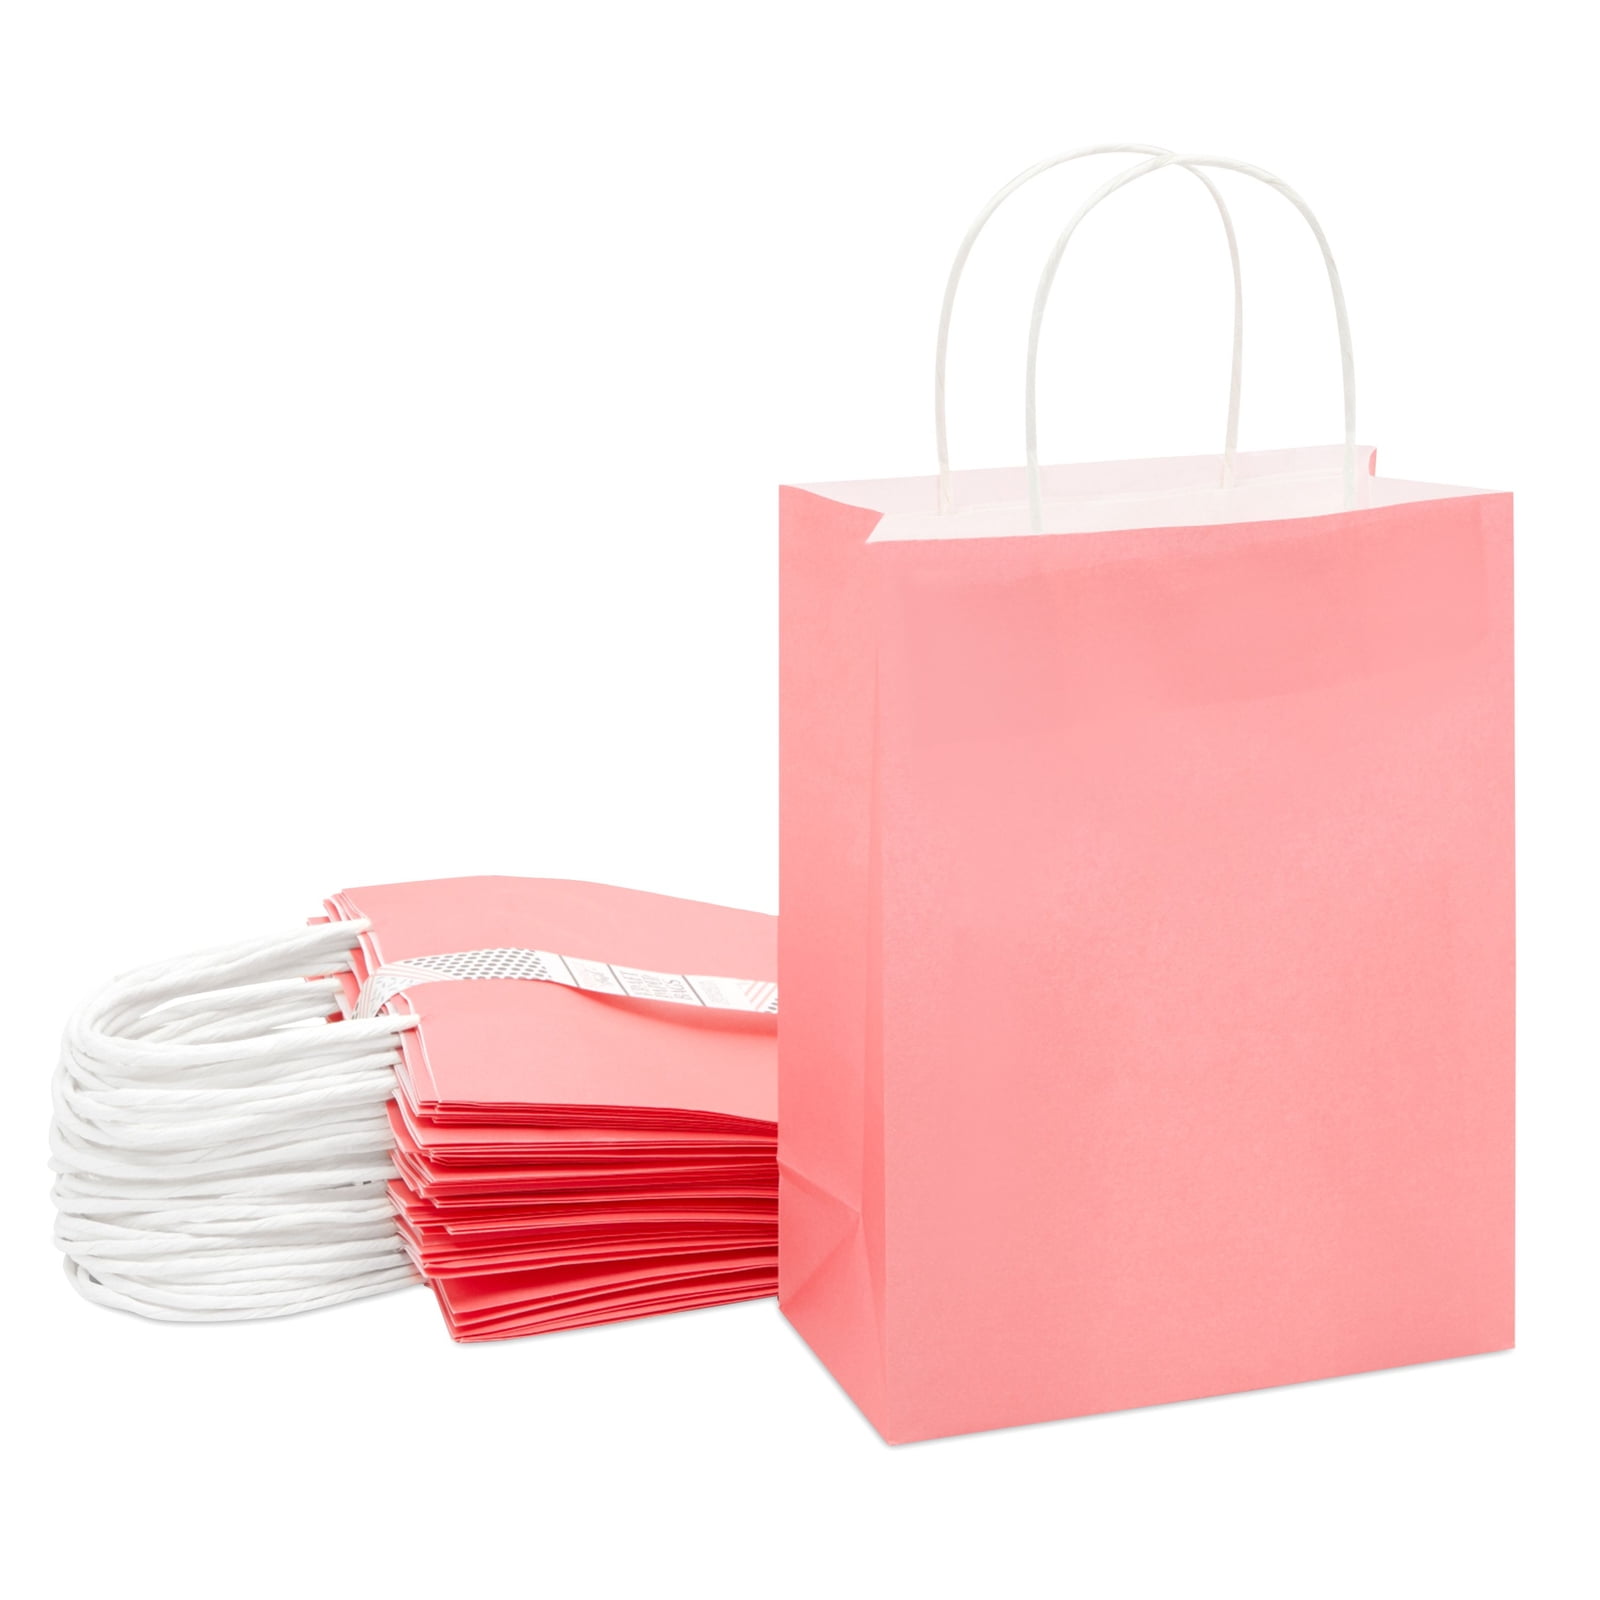 Hot Pink Paper Bags - Creative Bag